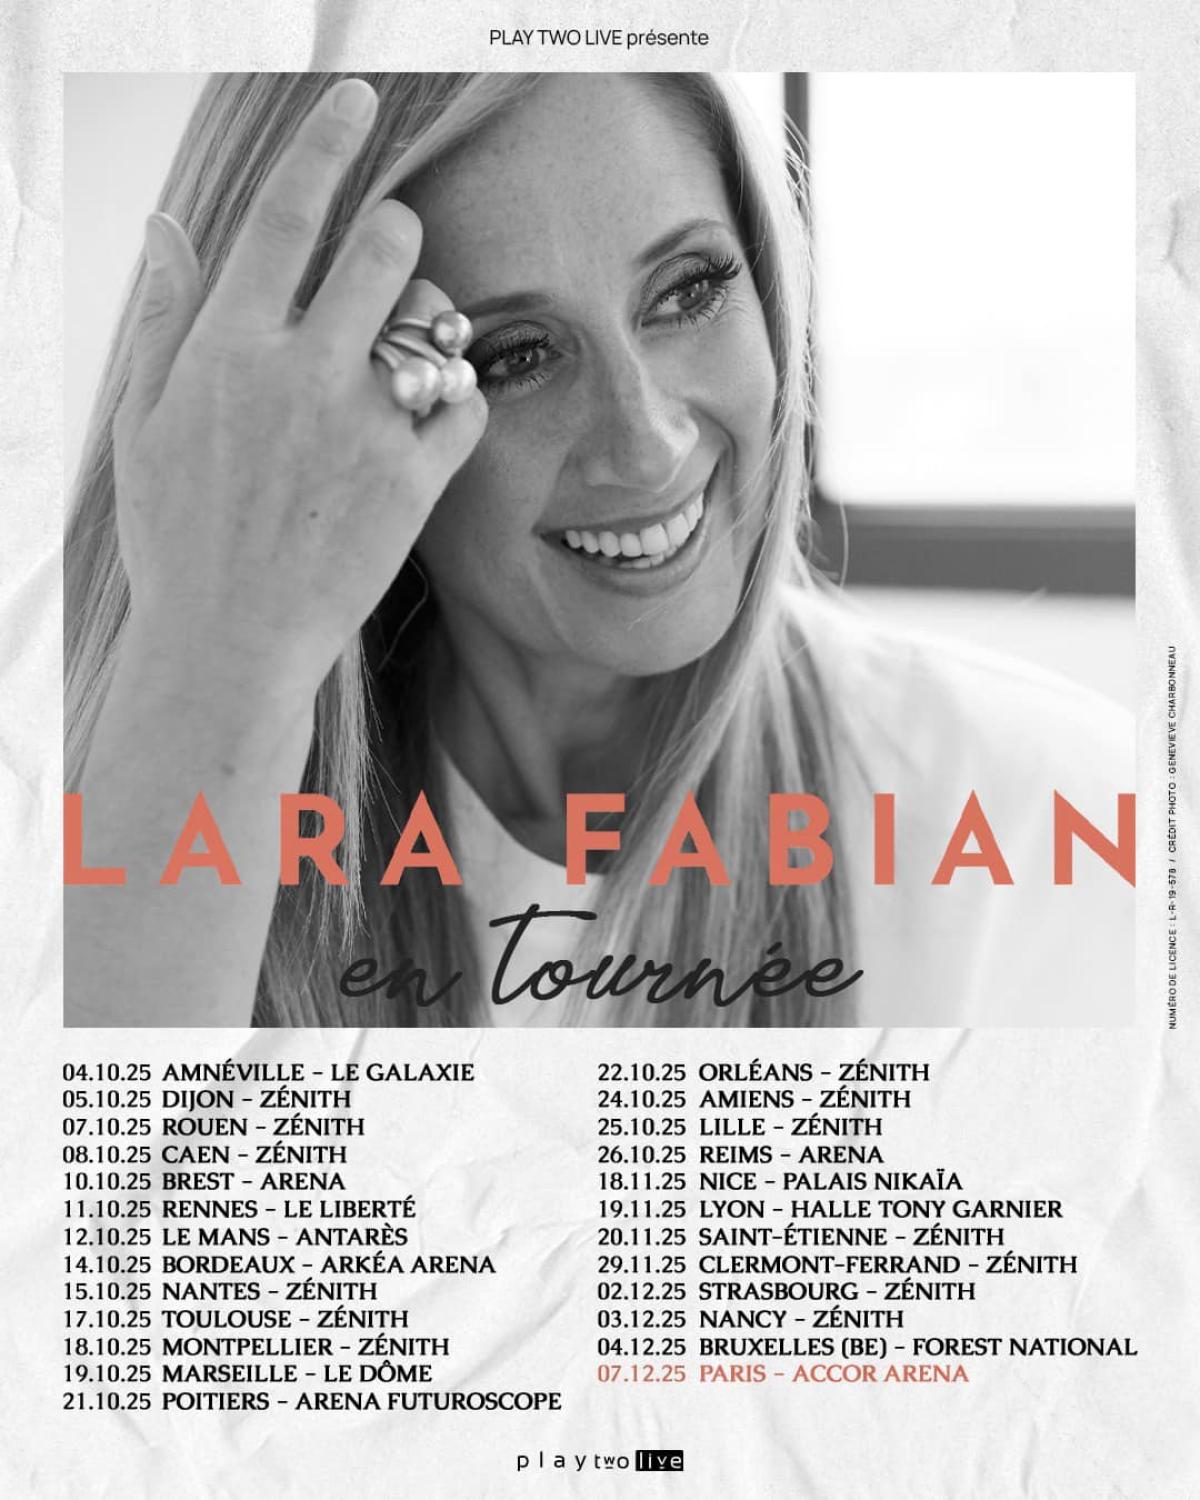 Lara Fabian en Arena Futuroscope Tickets